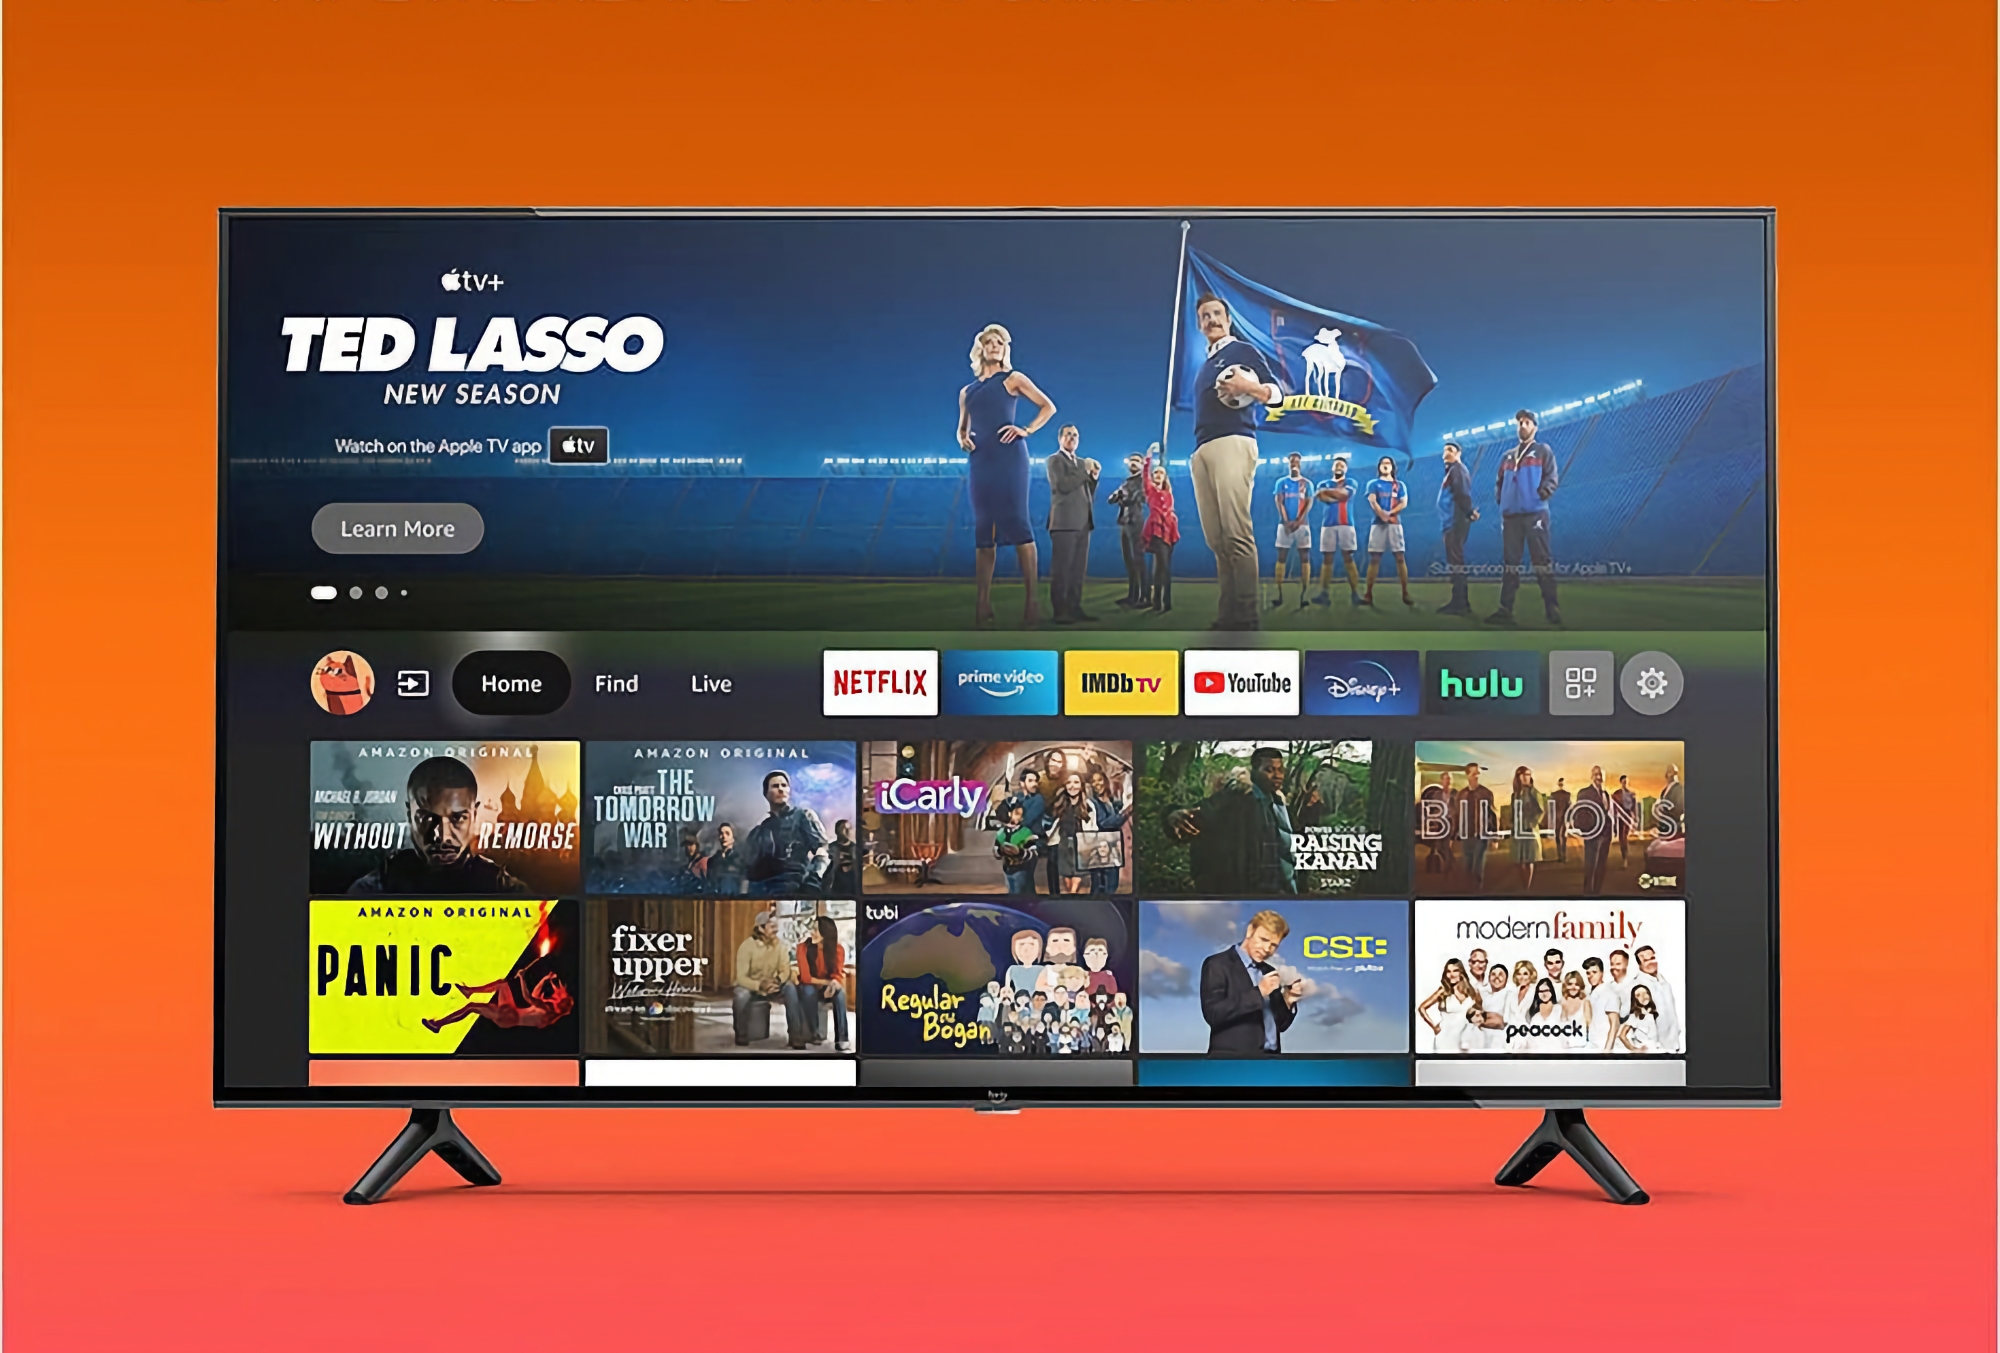 Angebot des Tages: Amazon Fire TV Omni mit 50-Zoll-4K-Bildschirm und Alexa-Sprachassistentin für 226 $ günstiger erhältlich